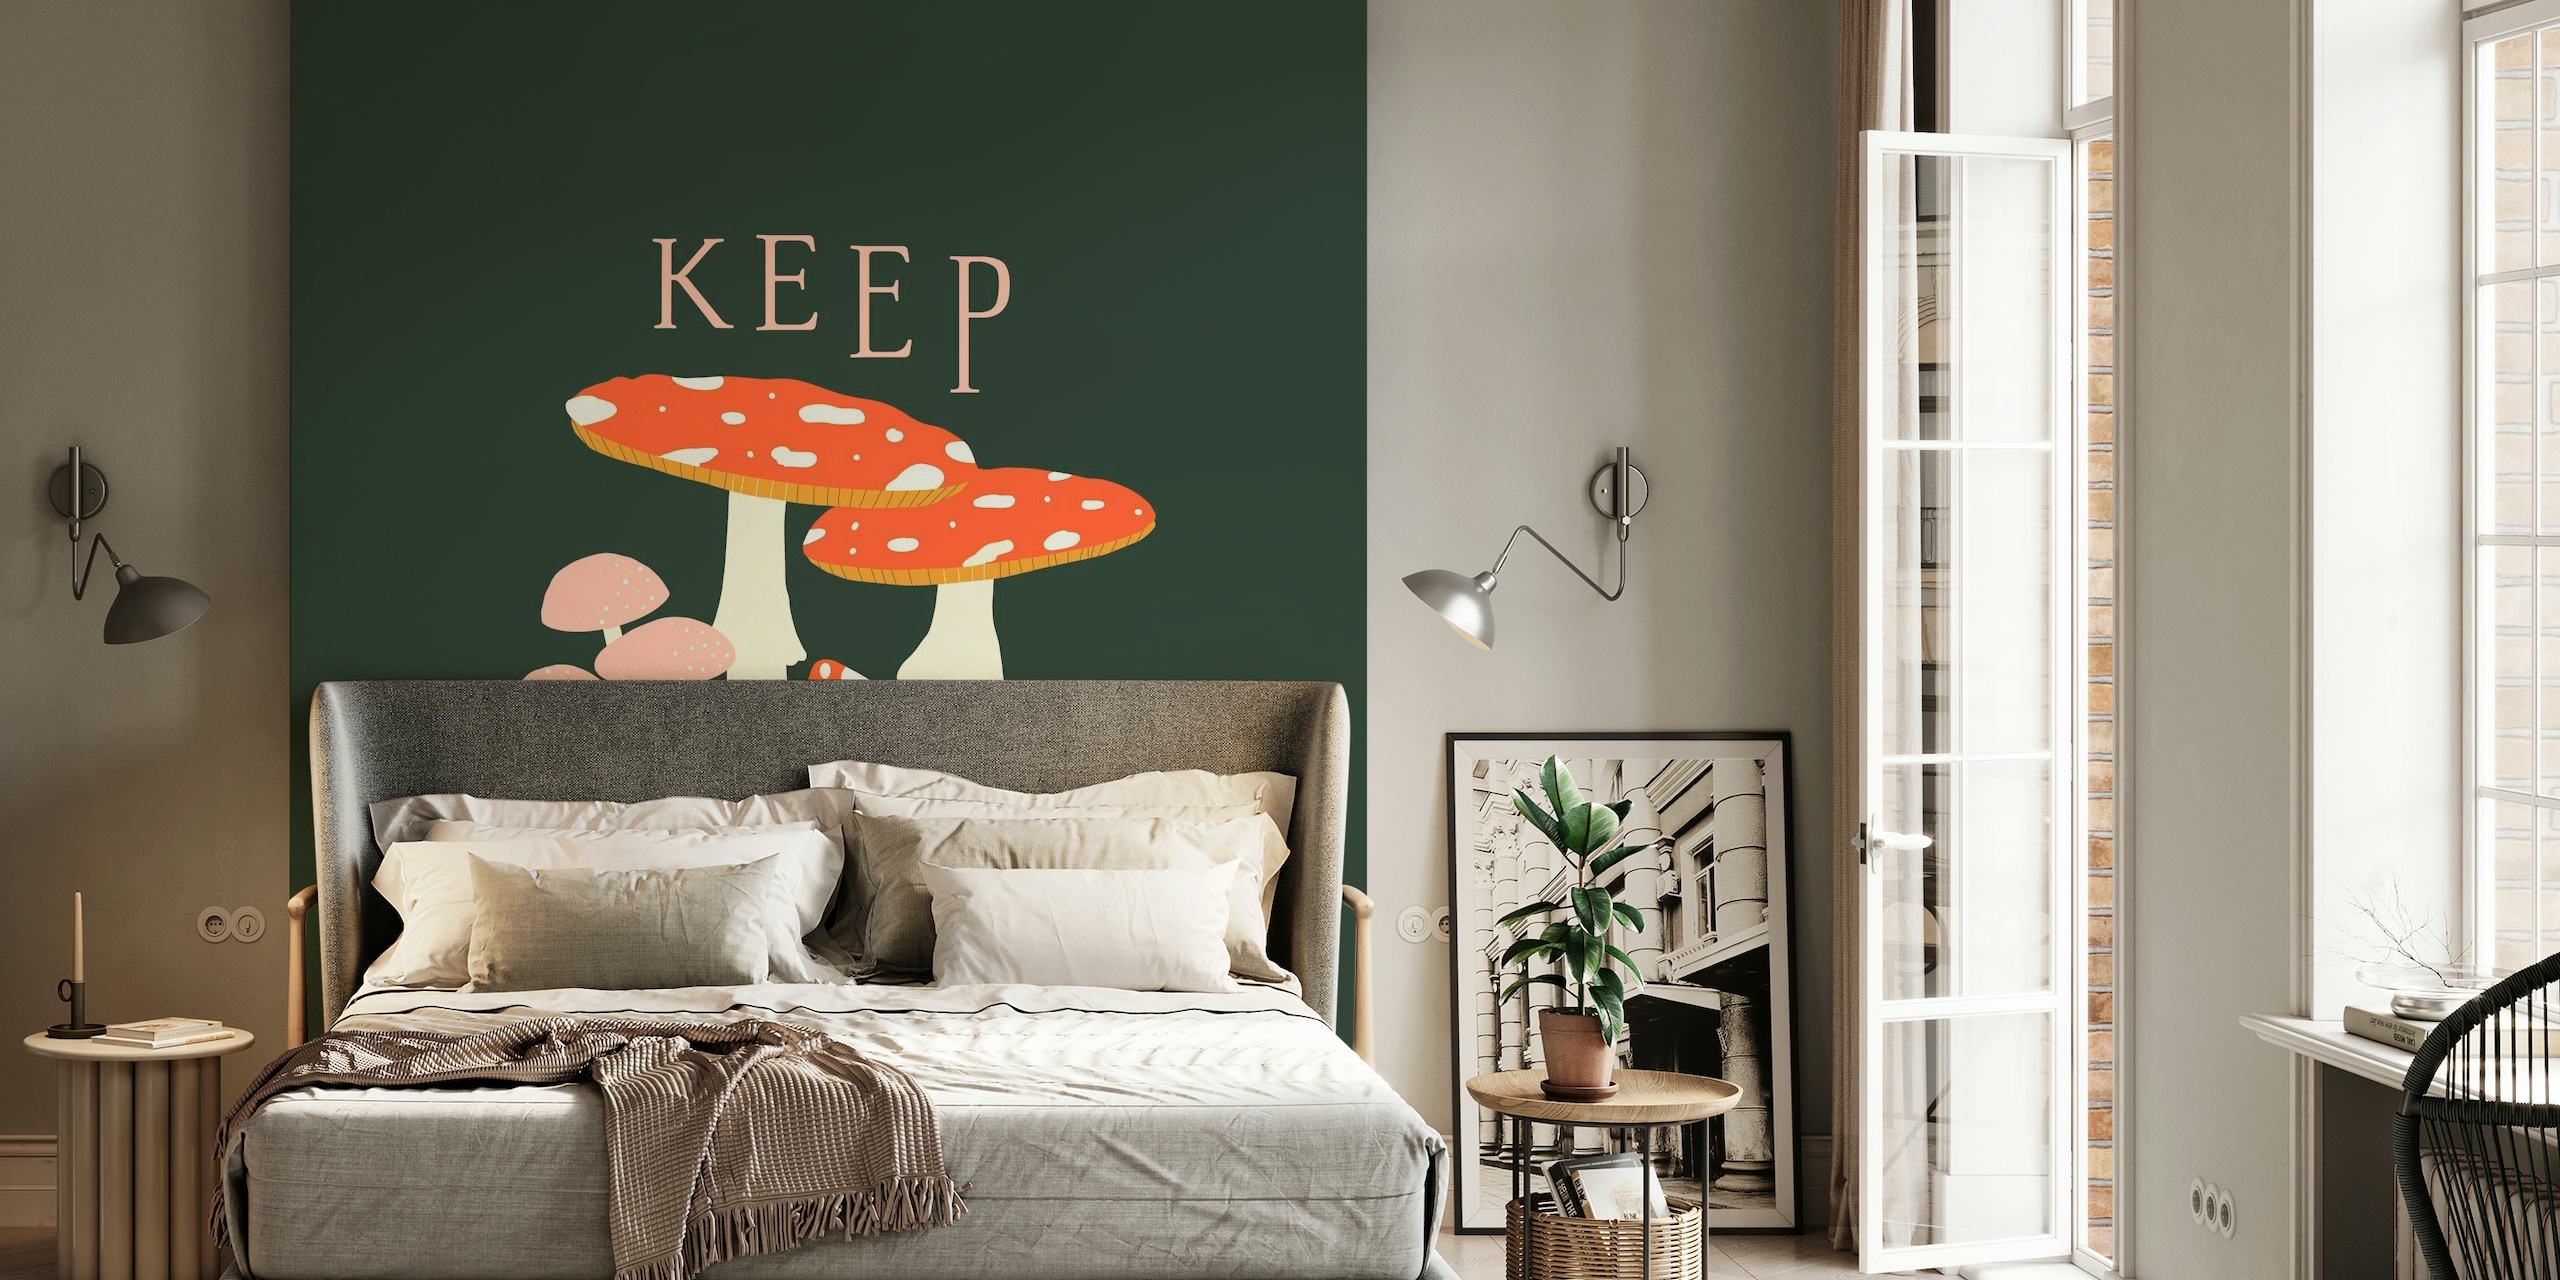 Keep Growing Moosrooms papel pintado